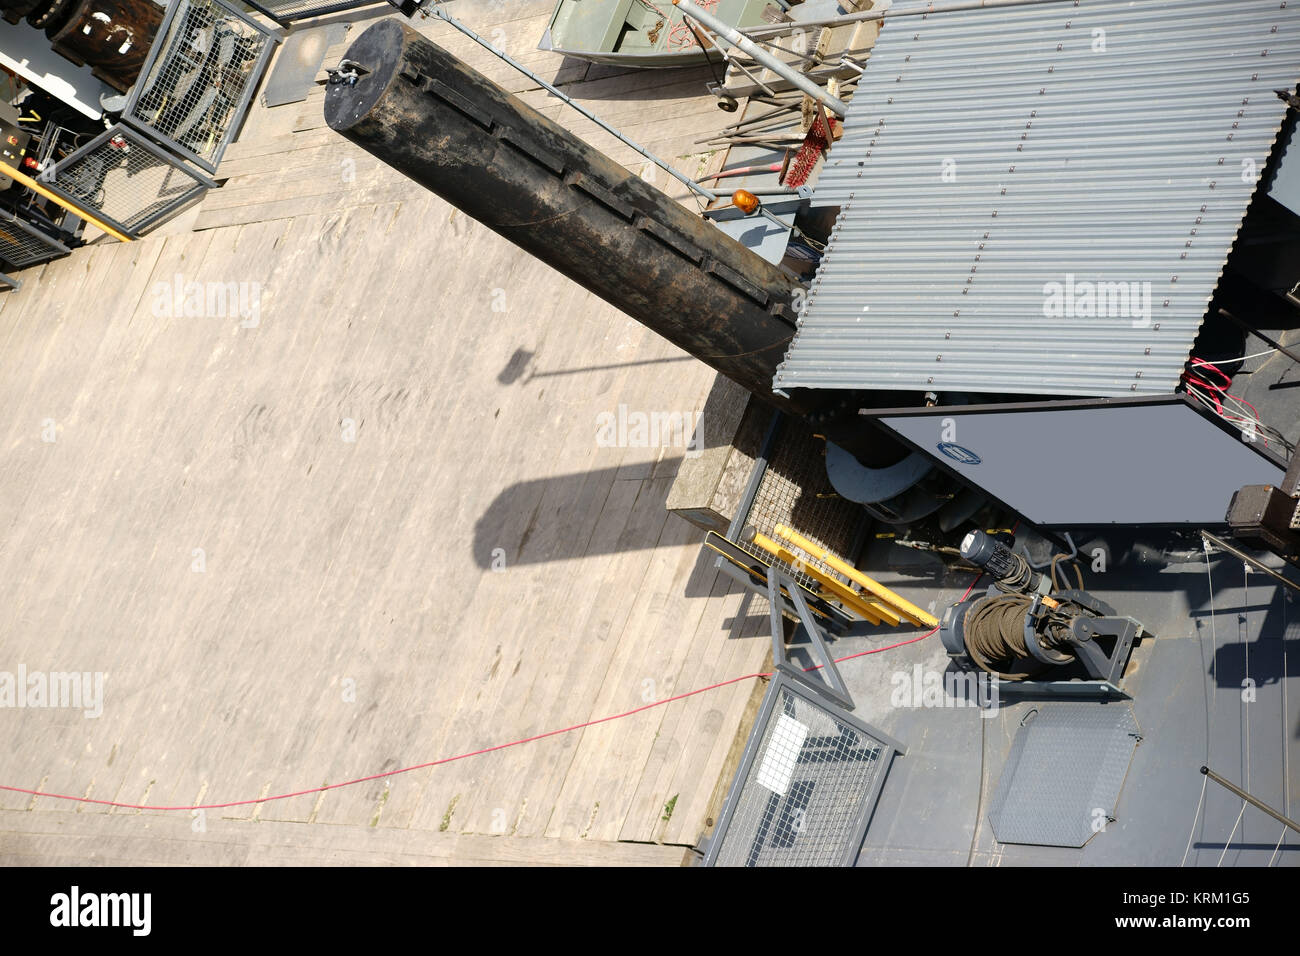 Die Draufsicht auf ein Schiffsdeck mit einer Kajüte aus einem Wellblechdach sowie Werkzeugen und Materialien. Foto Stock